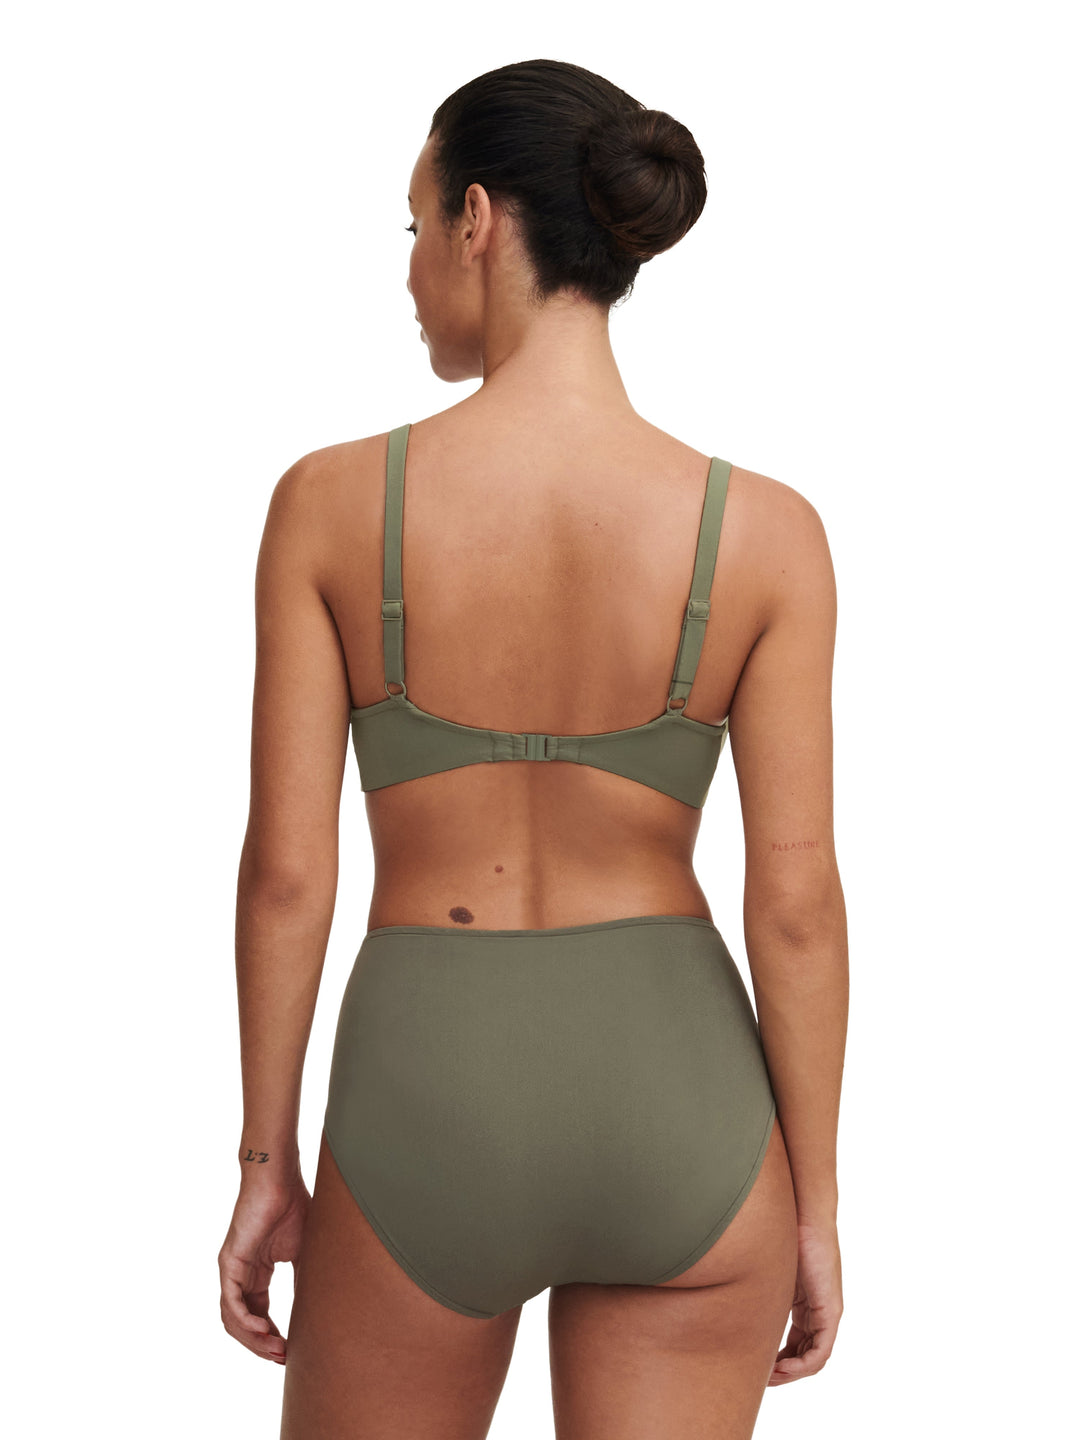 Chantelle Traje de baño Braga de bikini completa con emblema - Braguita de bikini completa verde caqui Chantelle